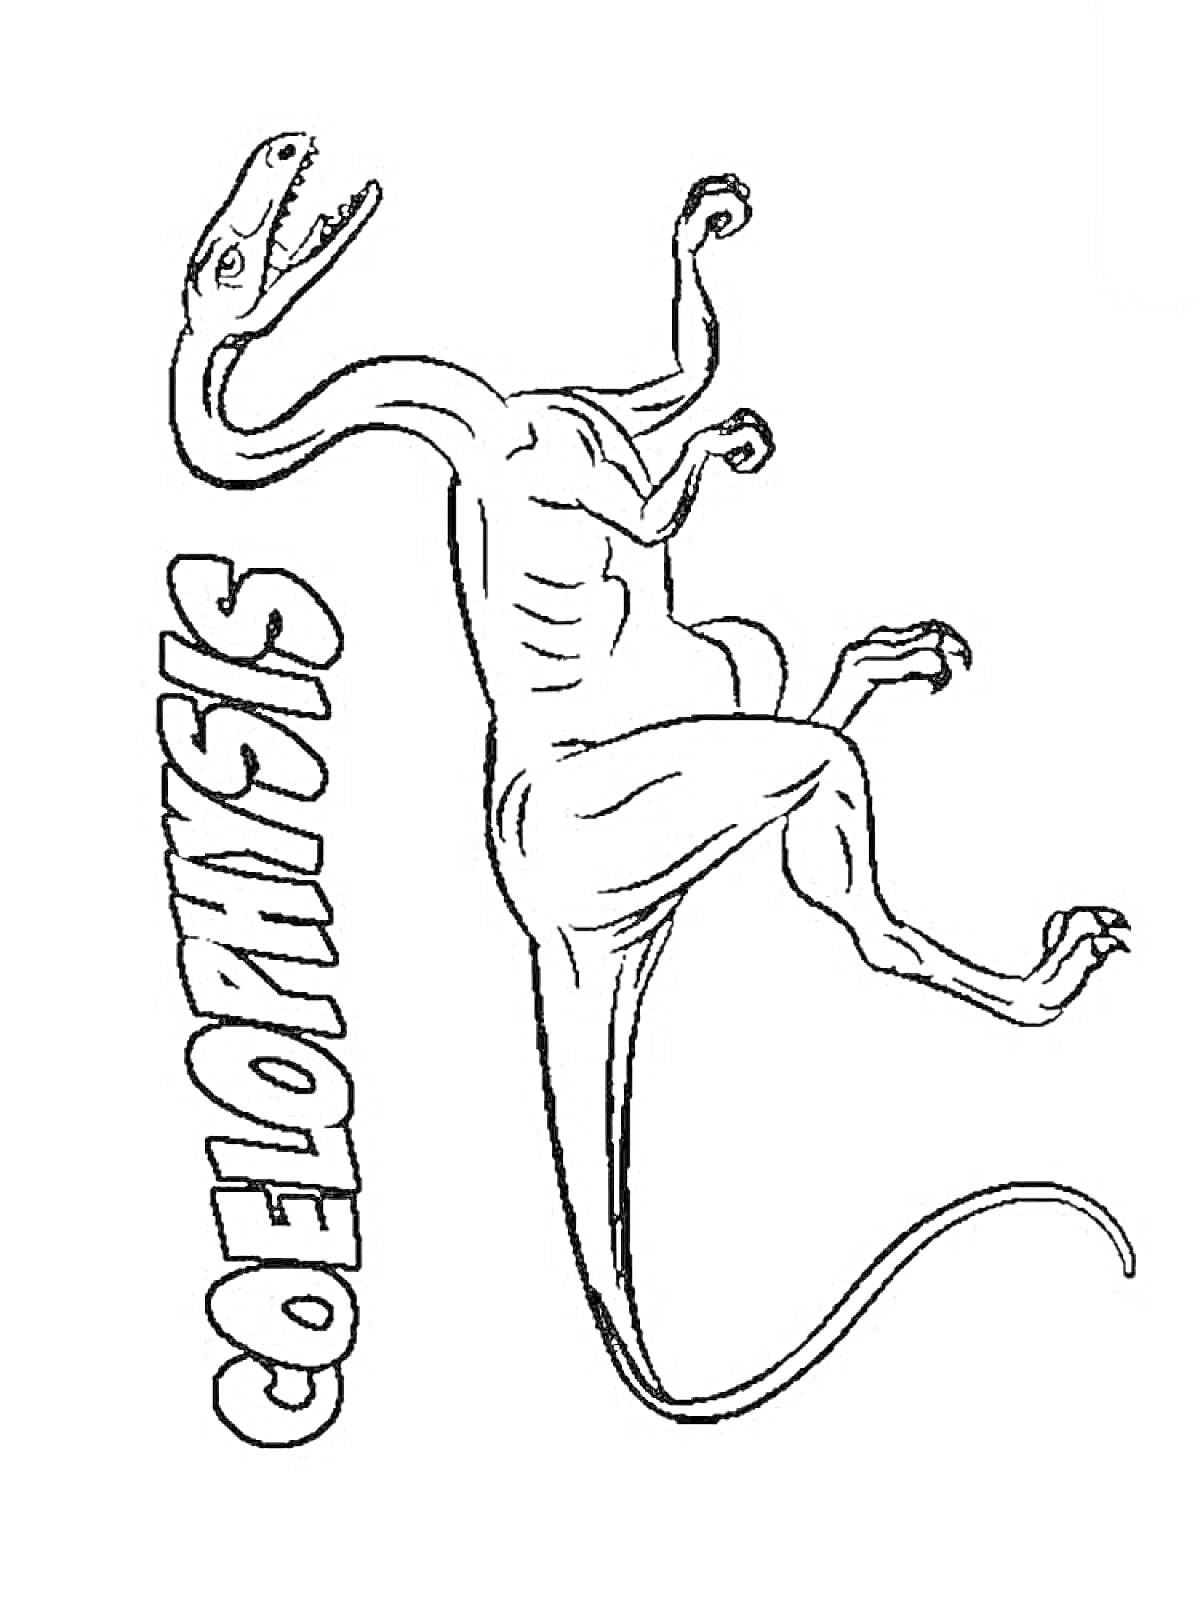 Раскраска Целофизис с названием динозавра